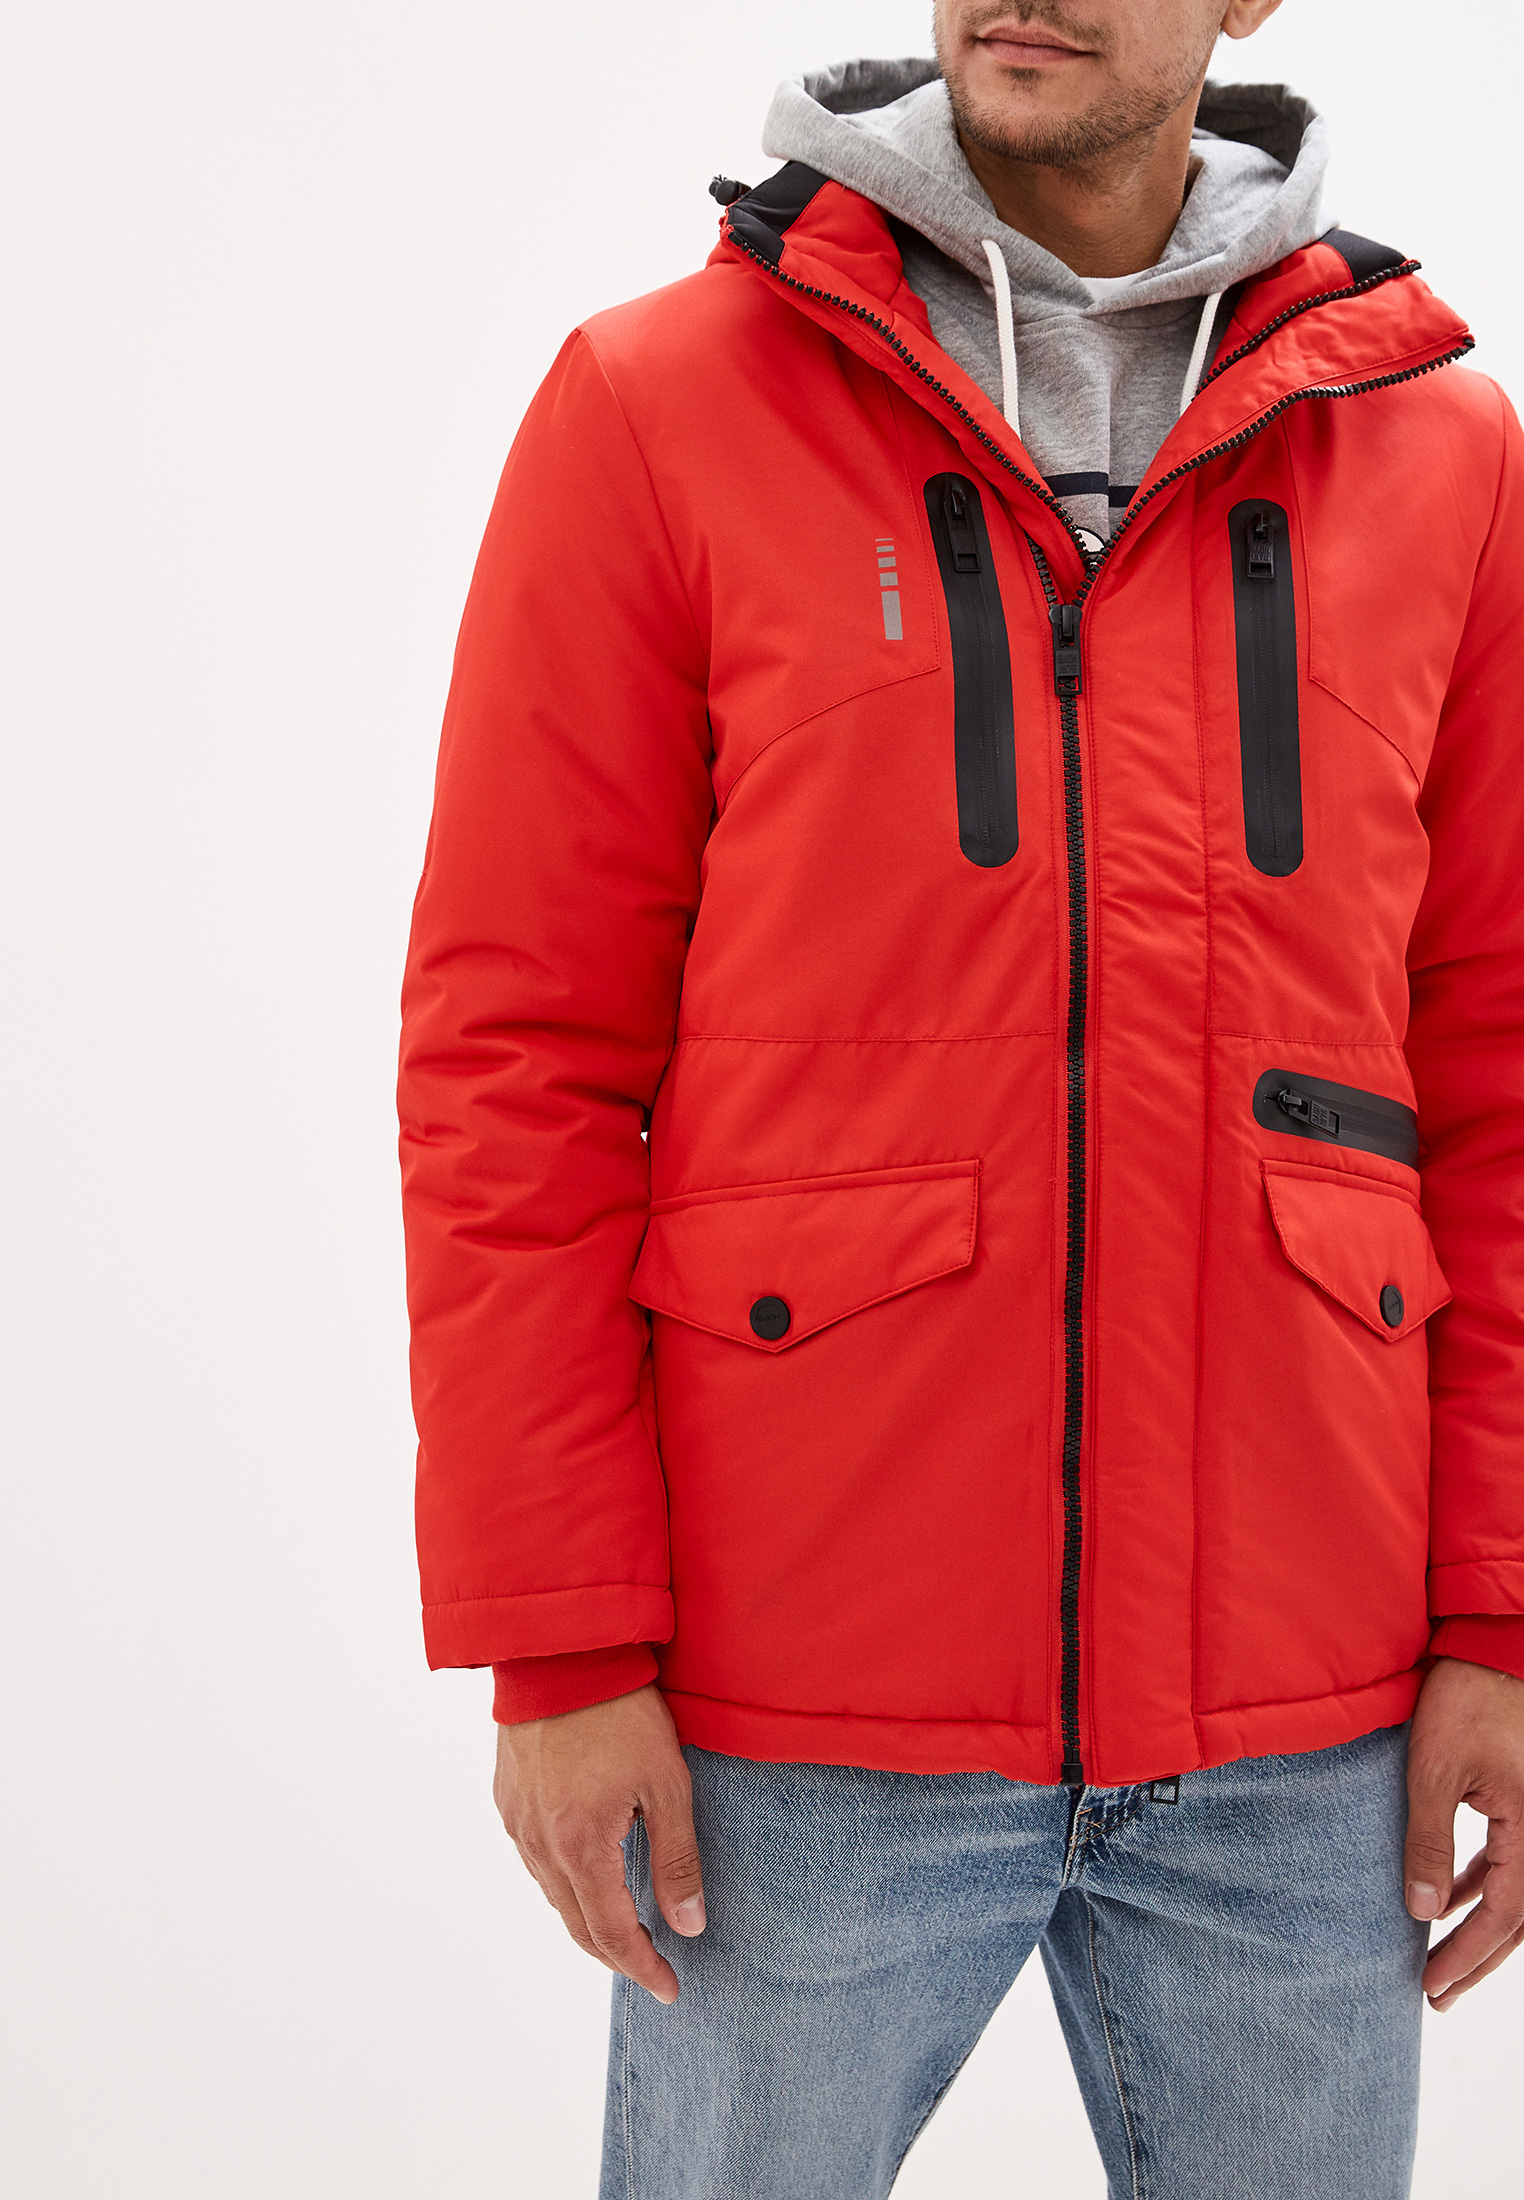 Мужские куртки red. Куртка Баон мужская зимняя красная. Baon красный Аляска мужской Stockholm. Куртка Баон красная. Куртка Баон мужская зимняя.